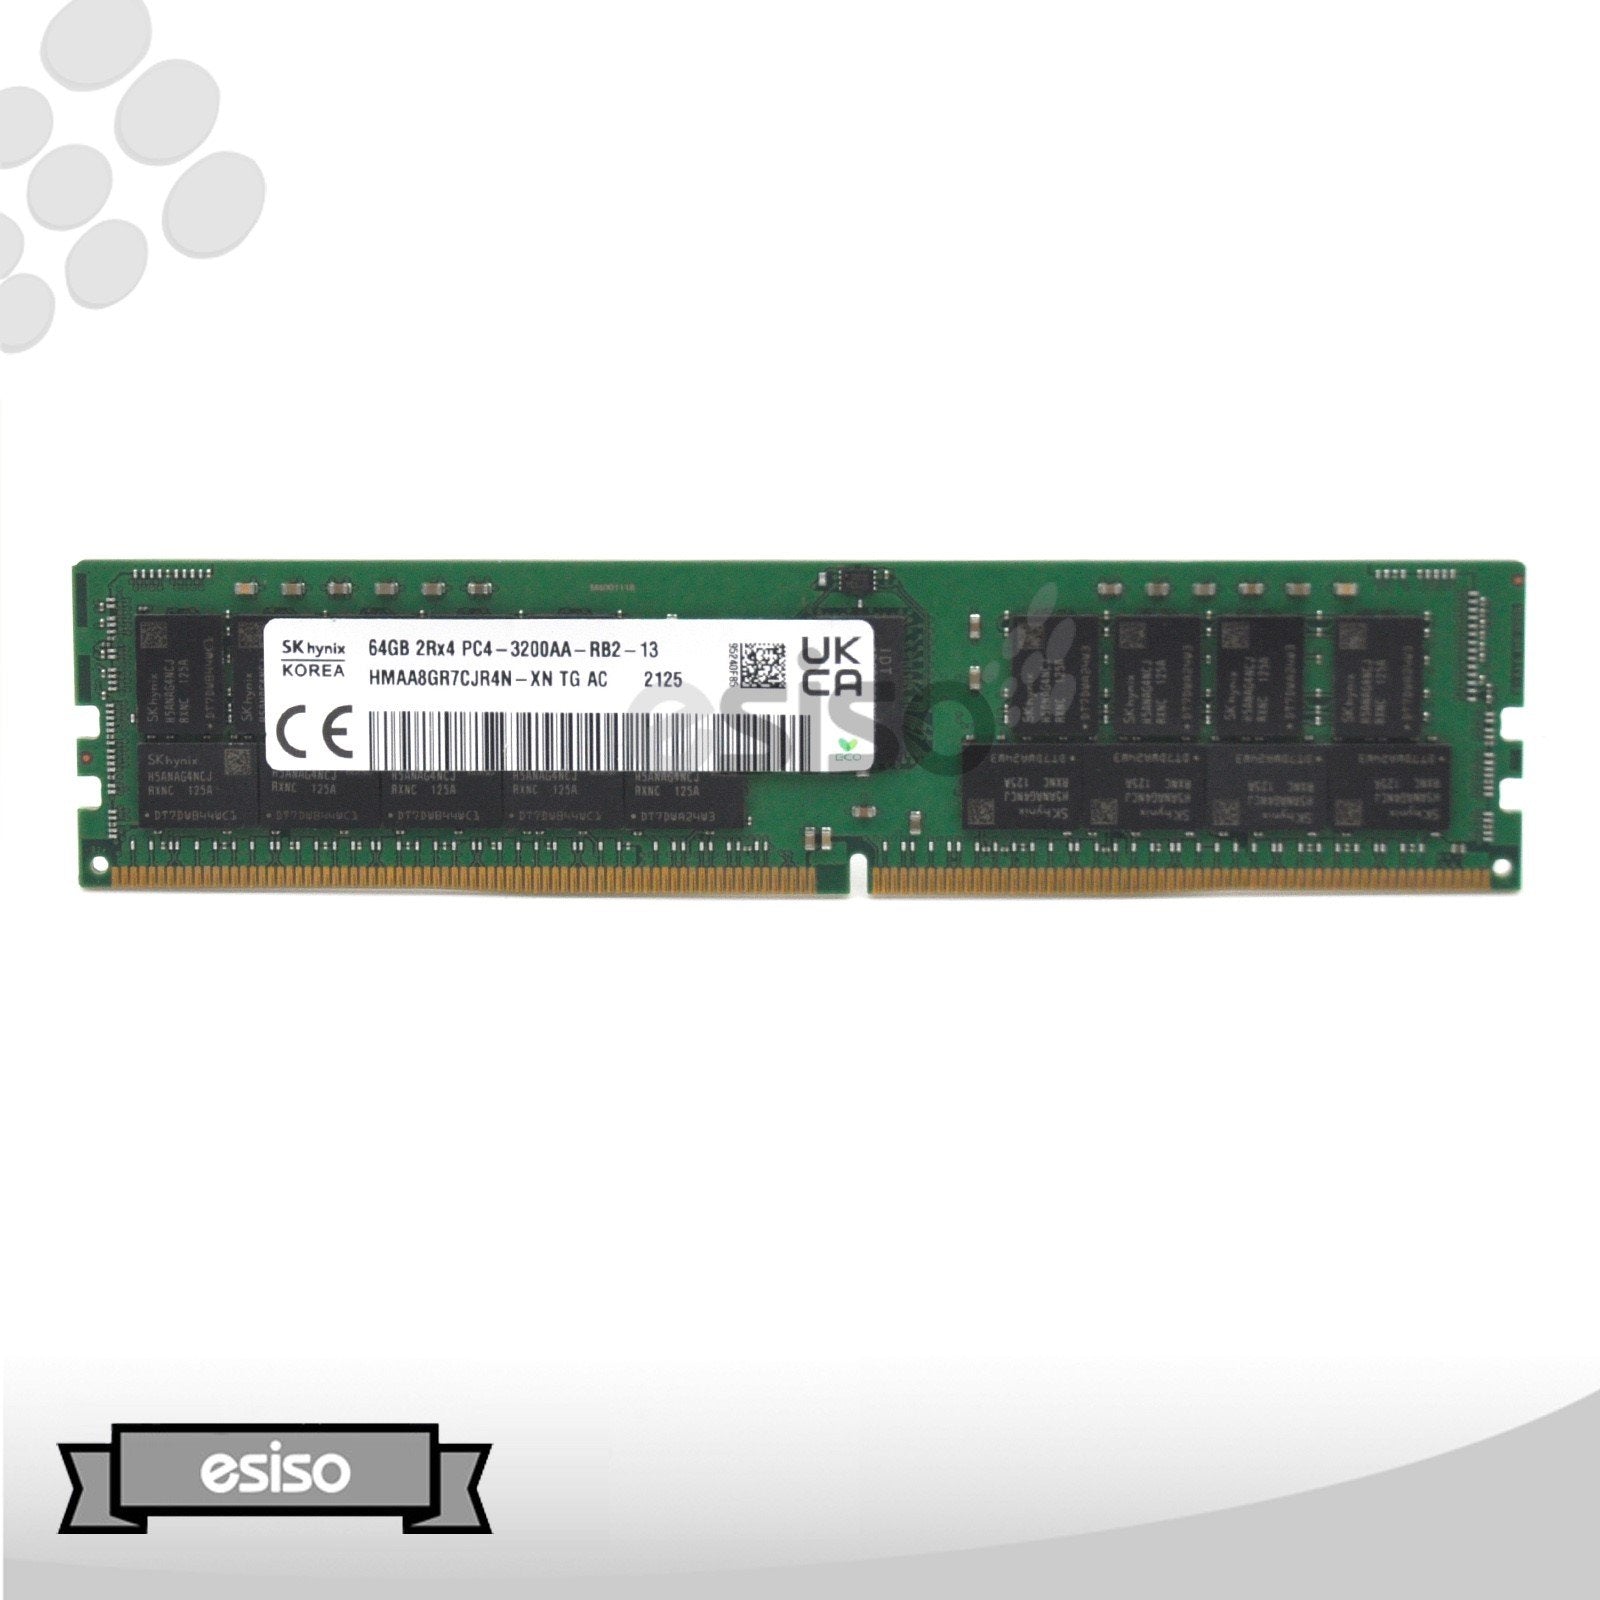 HMAA8GR7CJR4N-XN HYNIX 64GB 2RX4 PC4-3200A DDR4 MEMORY MOUDLE (1x64GB)